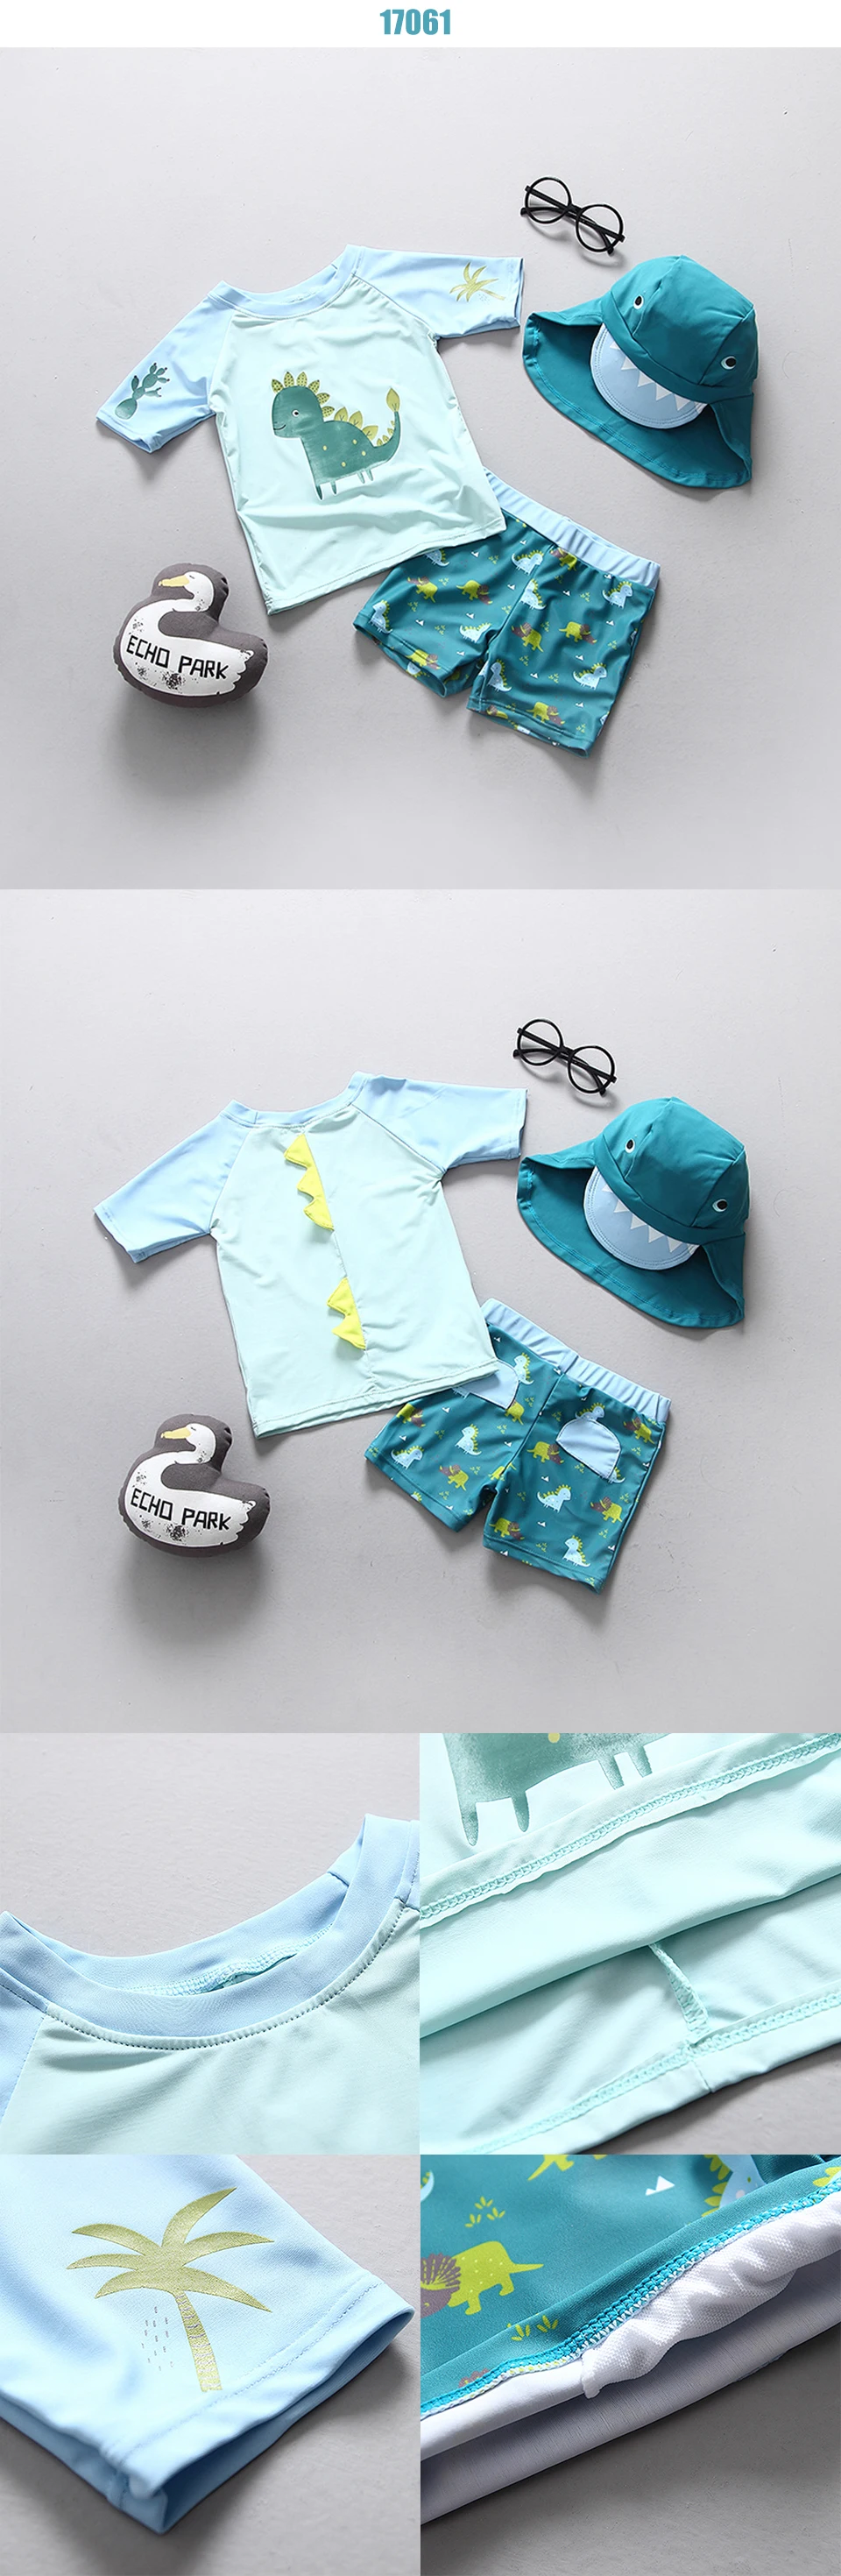 Купальный костюм для малышей; UPF50; детский купальный костюм для мальчиков с защитой от солнца; детский купальный костюм для мальчиков; одежда для купания для малышей; пляжная одежда